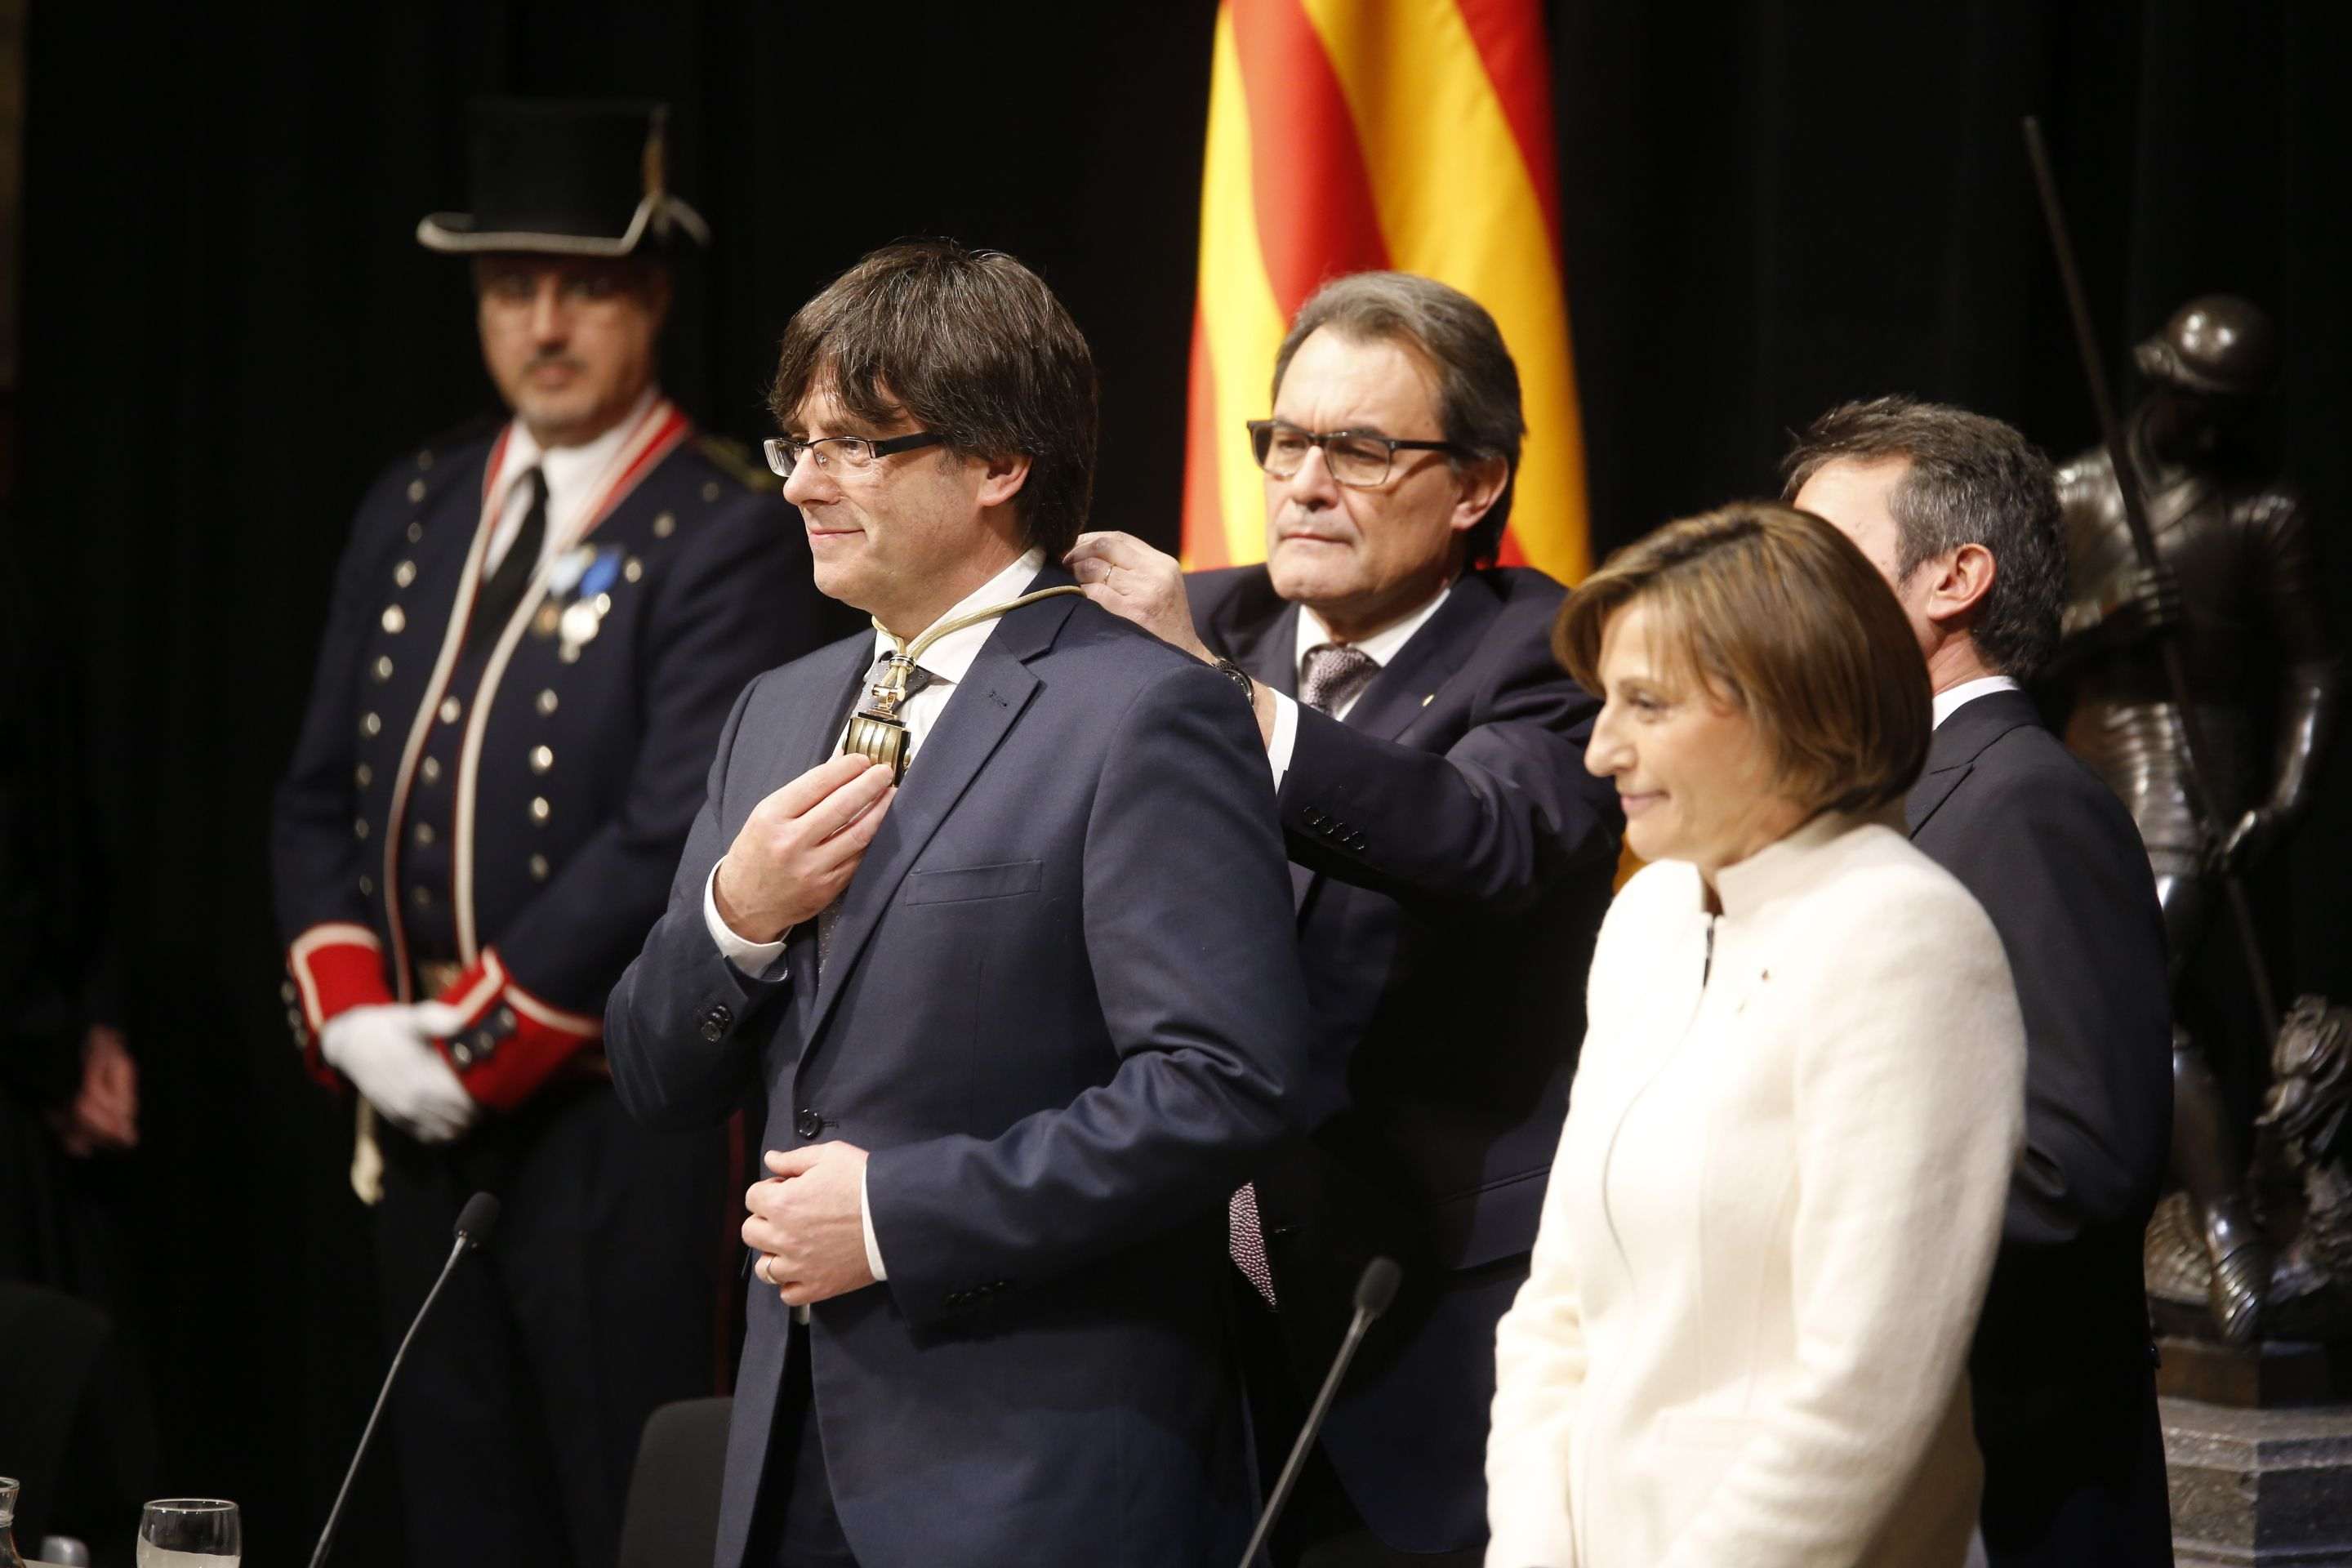 El acto de toma de posesión de Torra provoca un nuevo pulso con el gobierno español